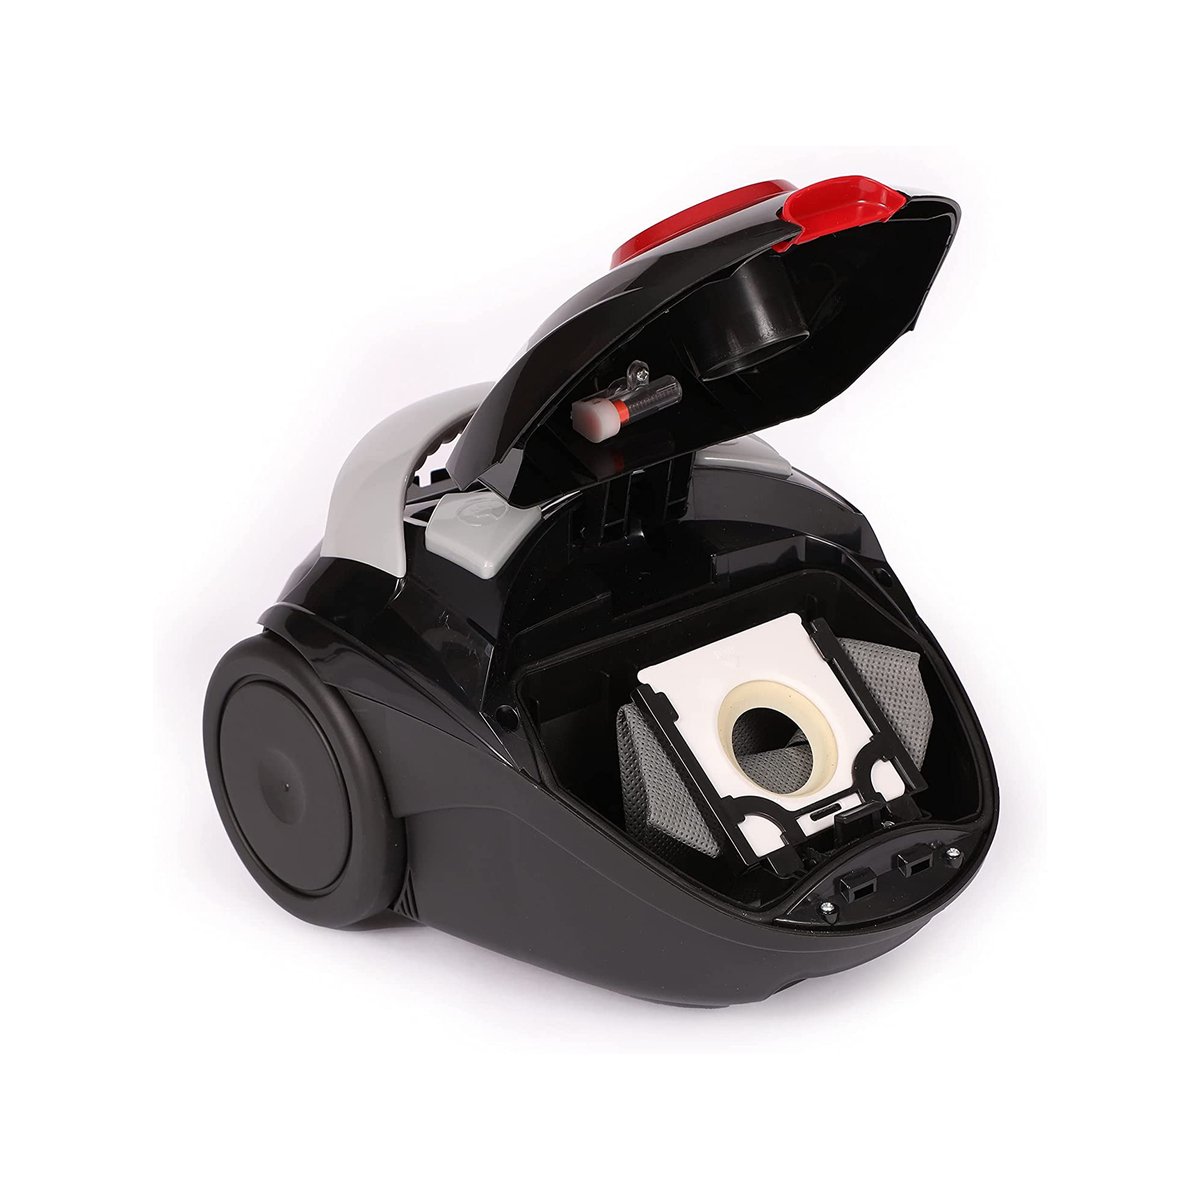 Impex Vacuum Cleaner VC-4705 1200W